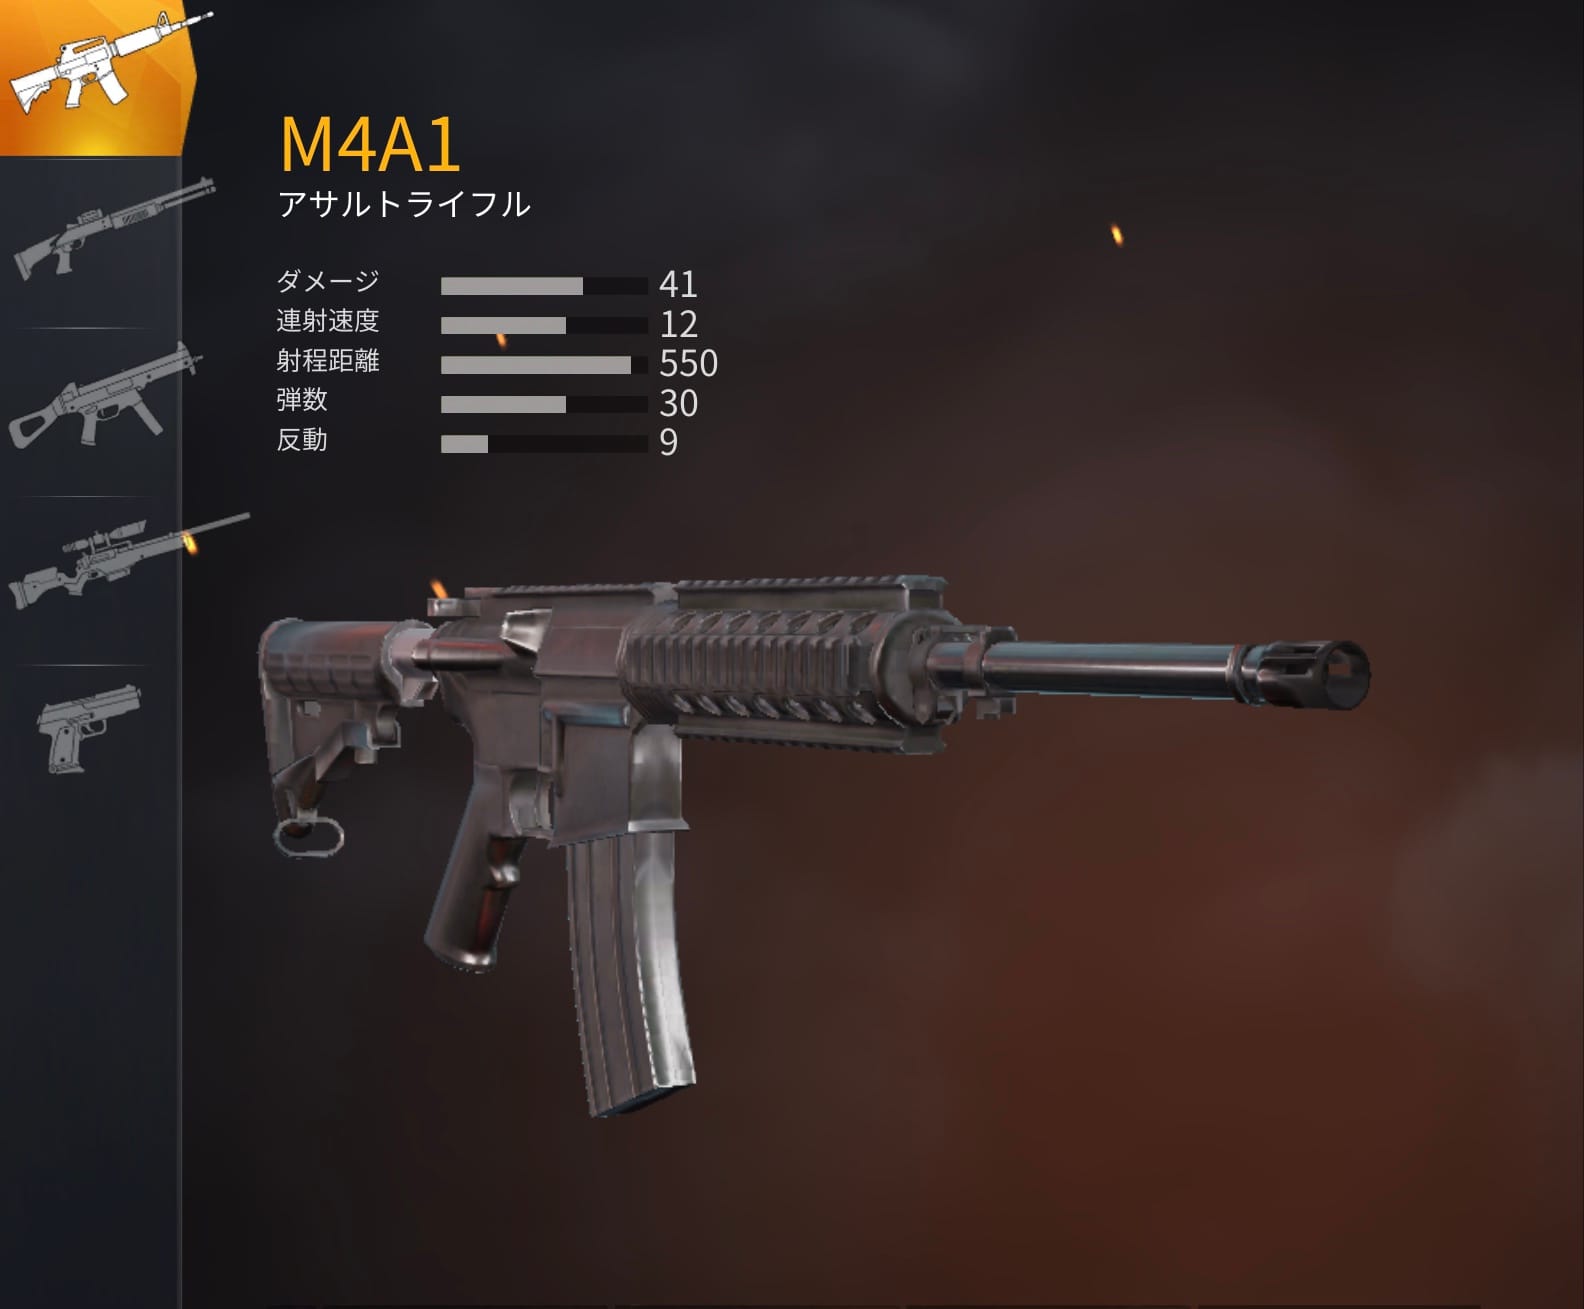 The定番武器M4A1